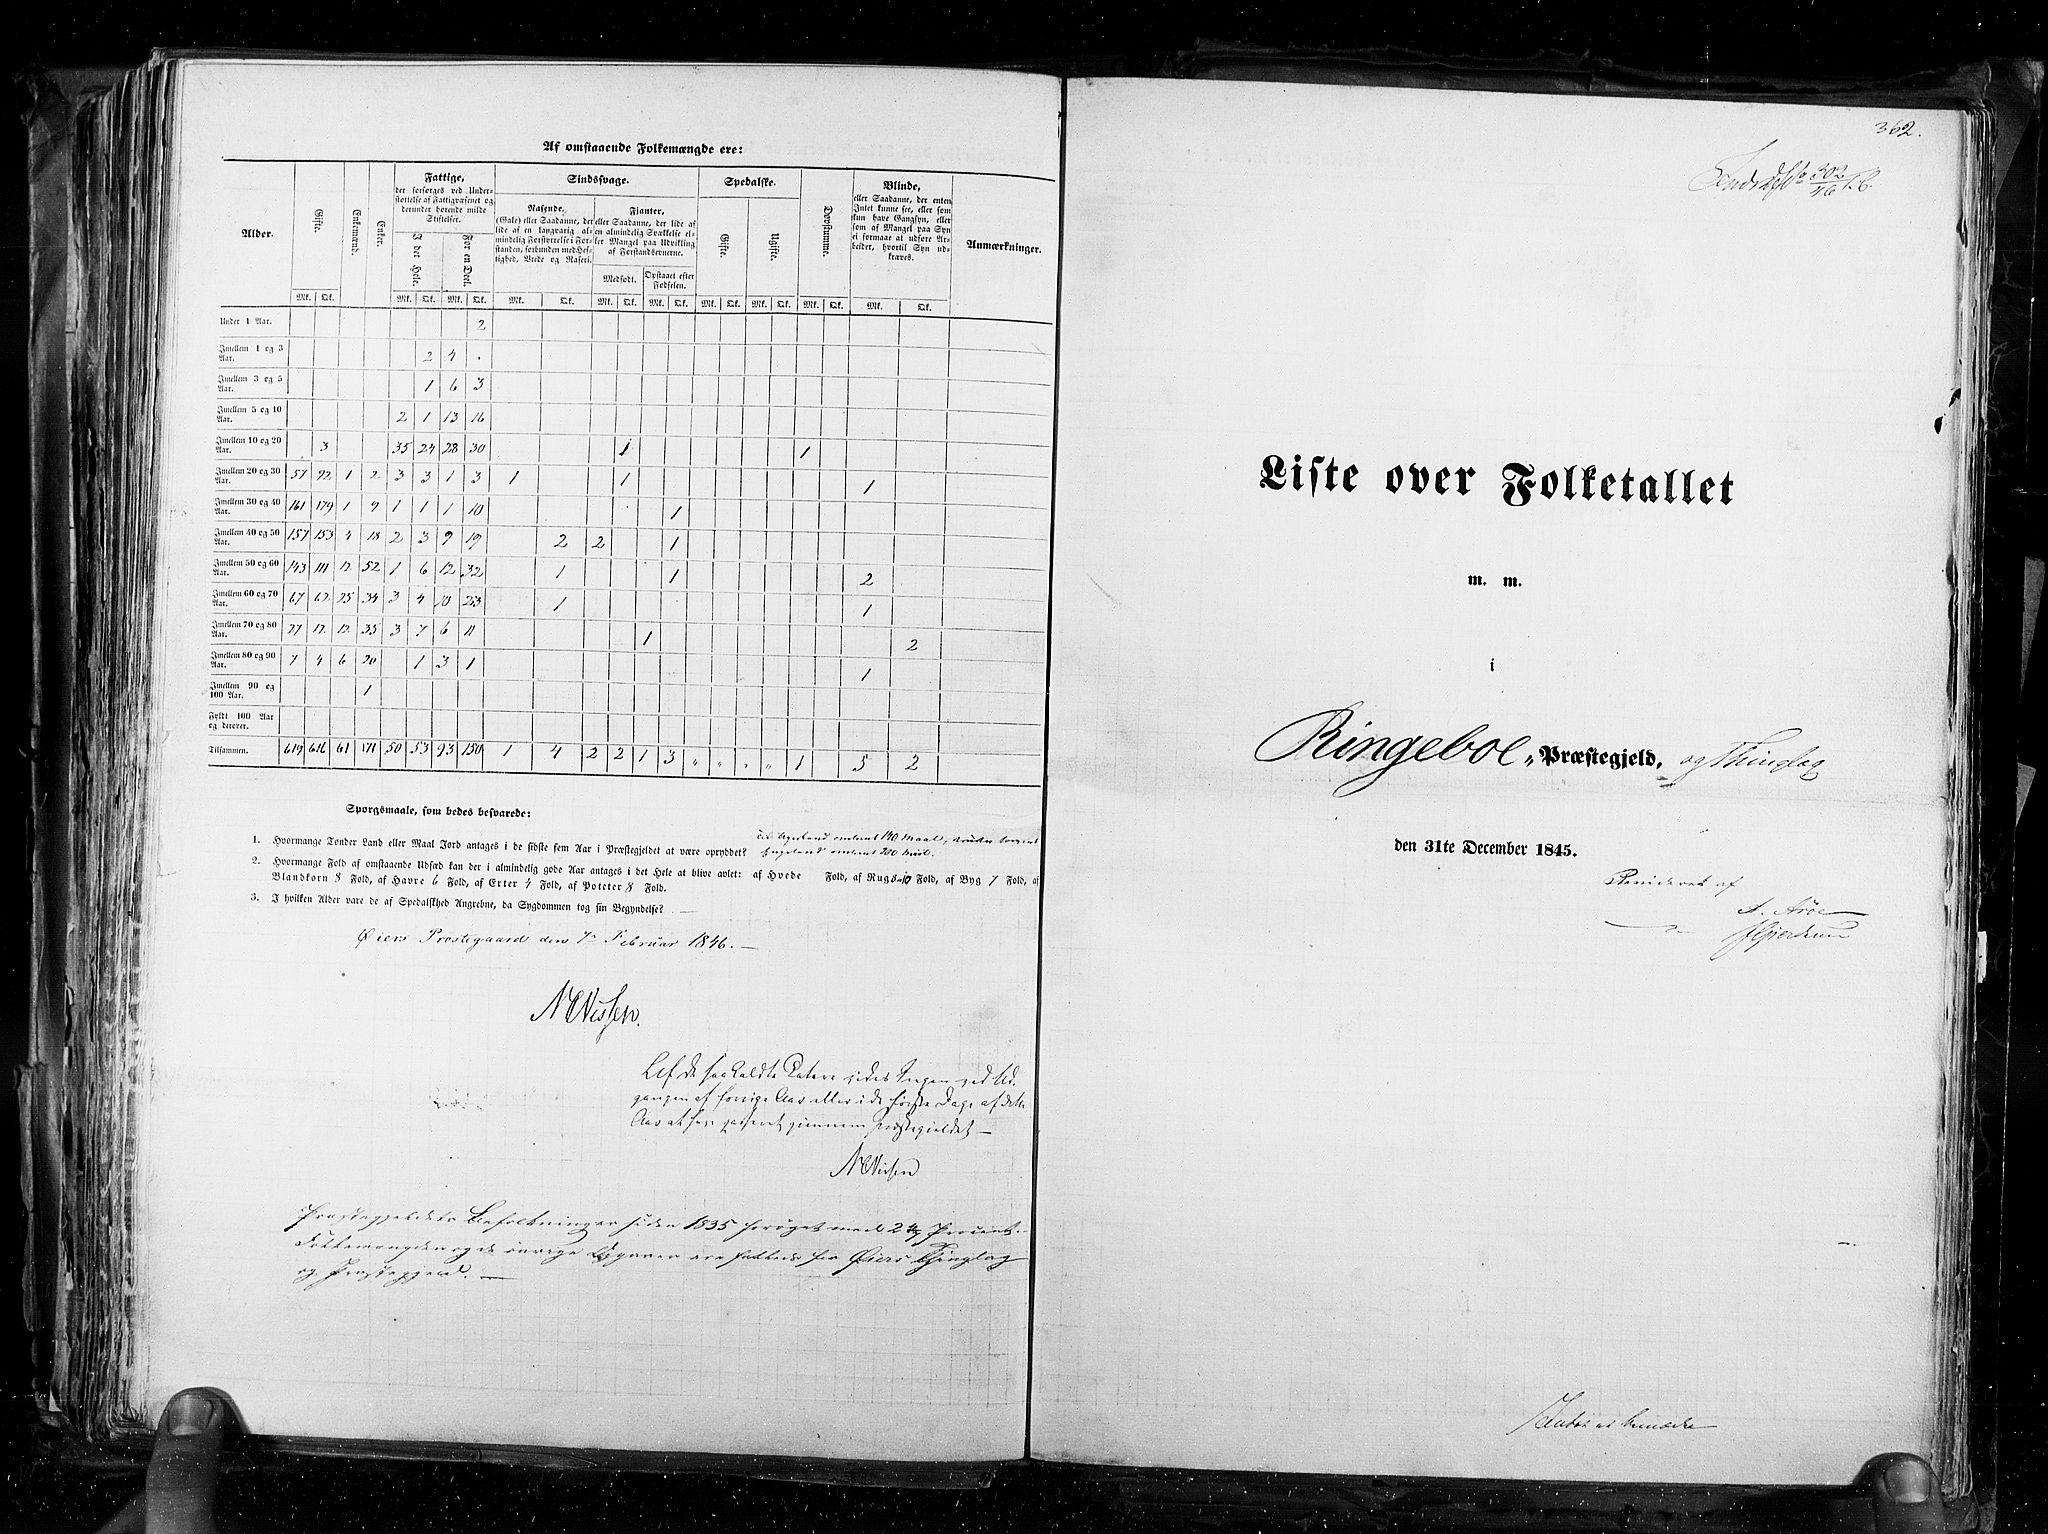 RA, Folketellingen 1845, bind 3: Hedemarken amt og Kristians amt, 1845, s. 362